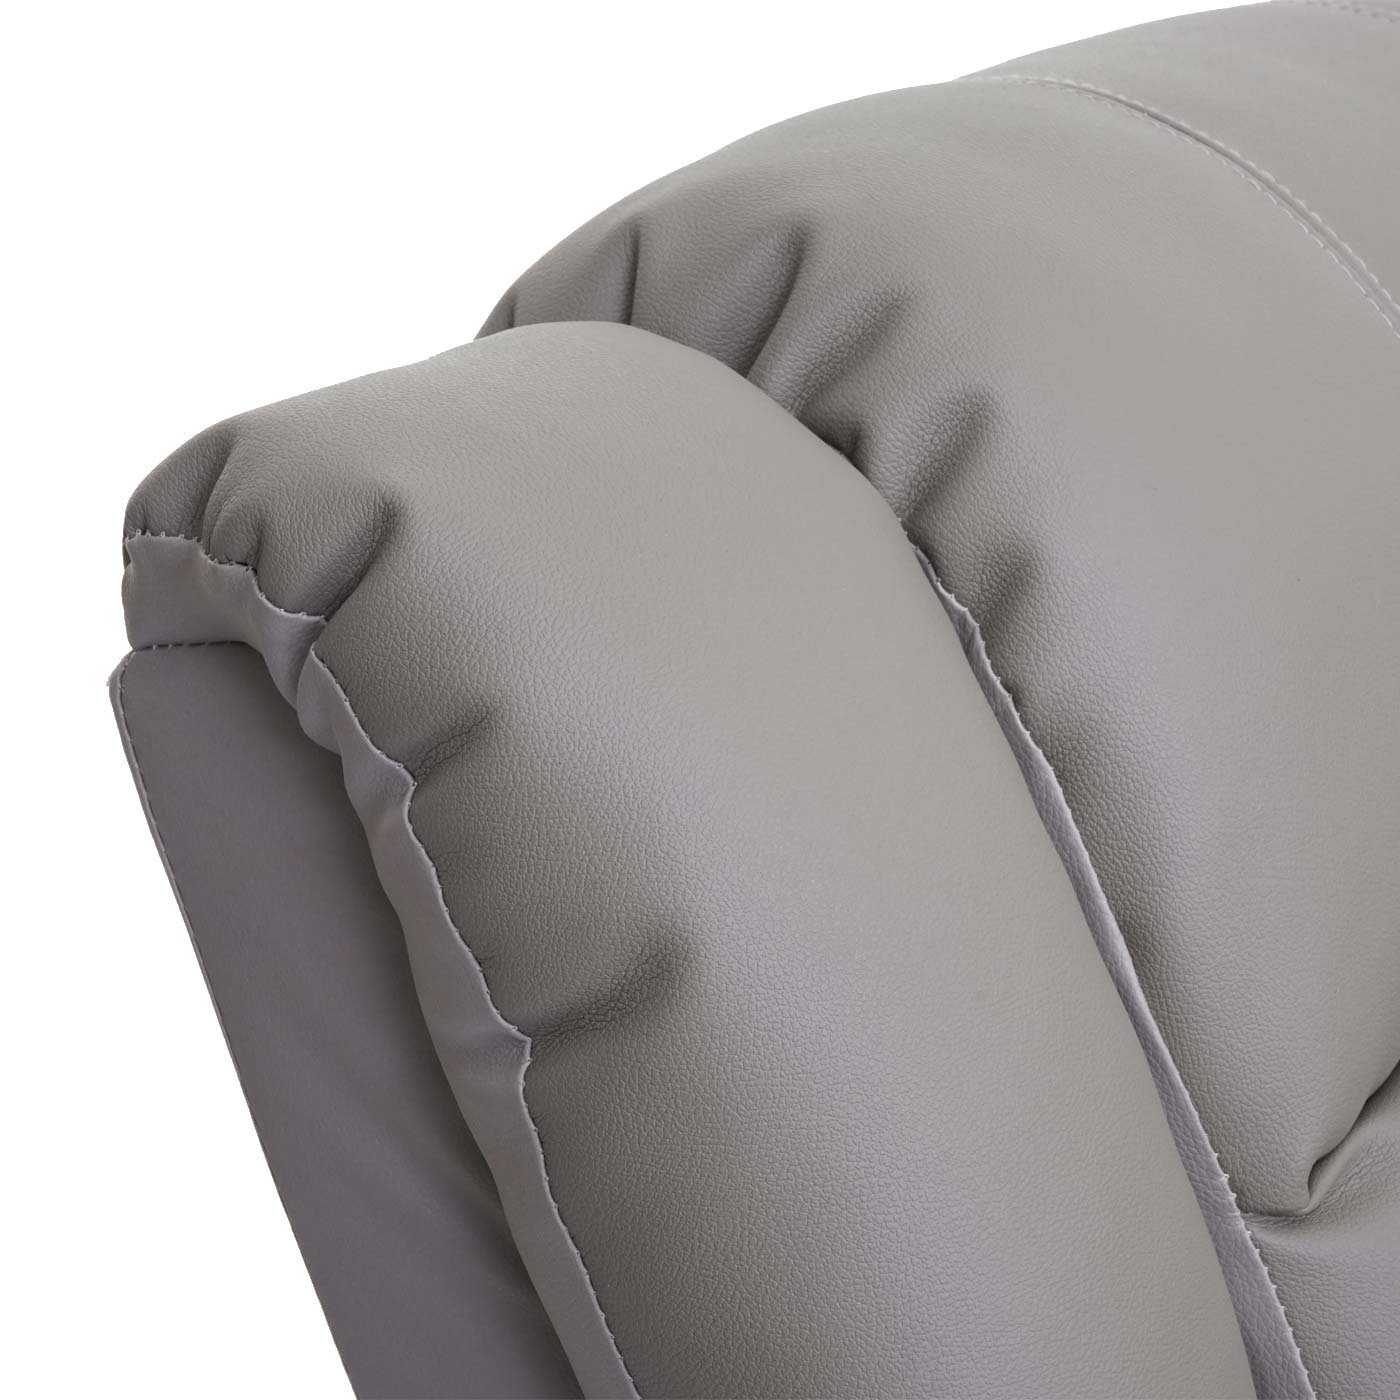 Liegefunktion TV-Sessel taupe Rückenfläche, Liegefläche: MCW MCW-G15, 165 Fußstütze cm, verstellbar, Verstellbare